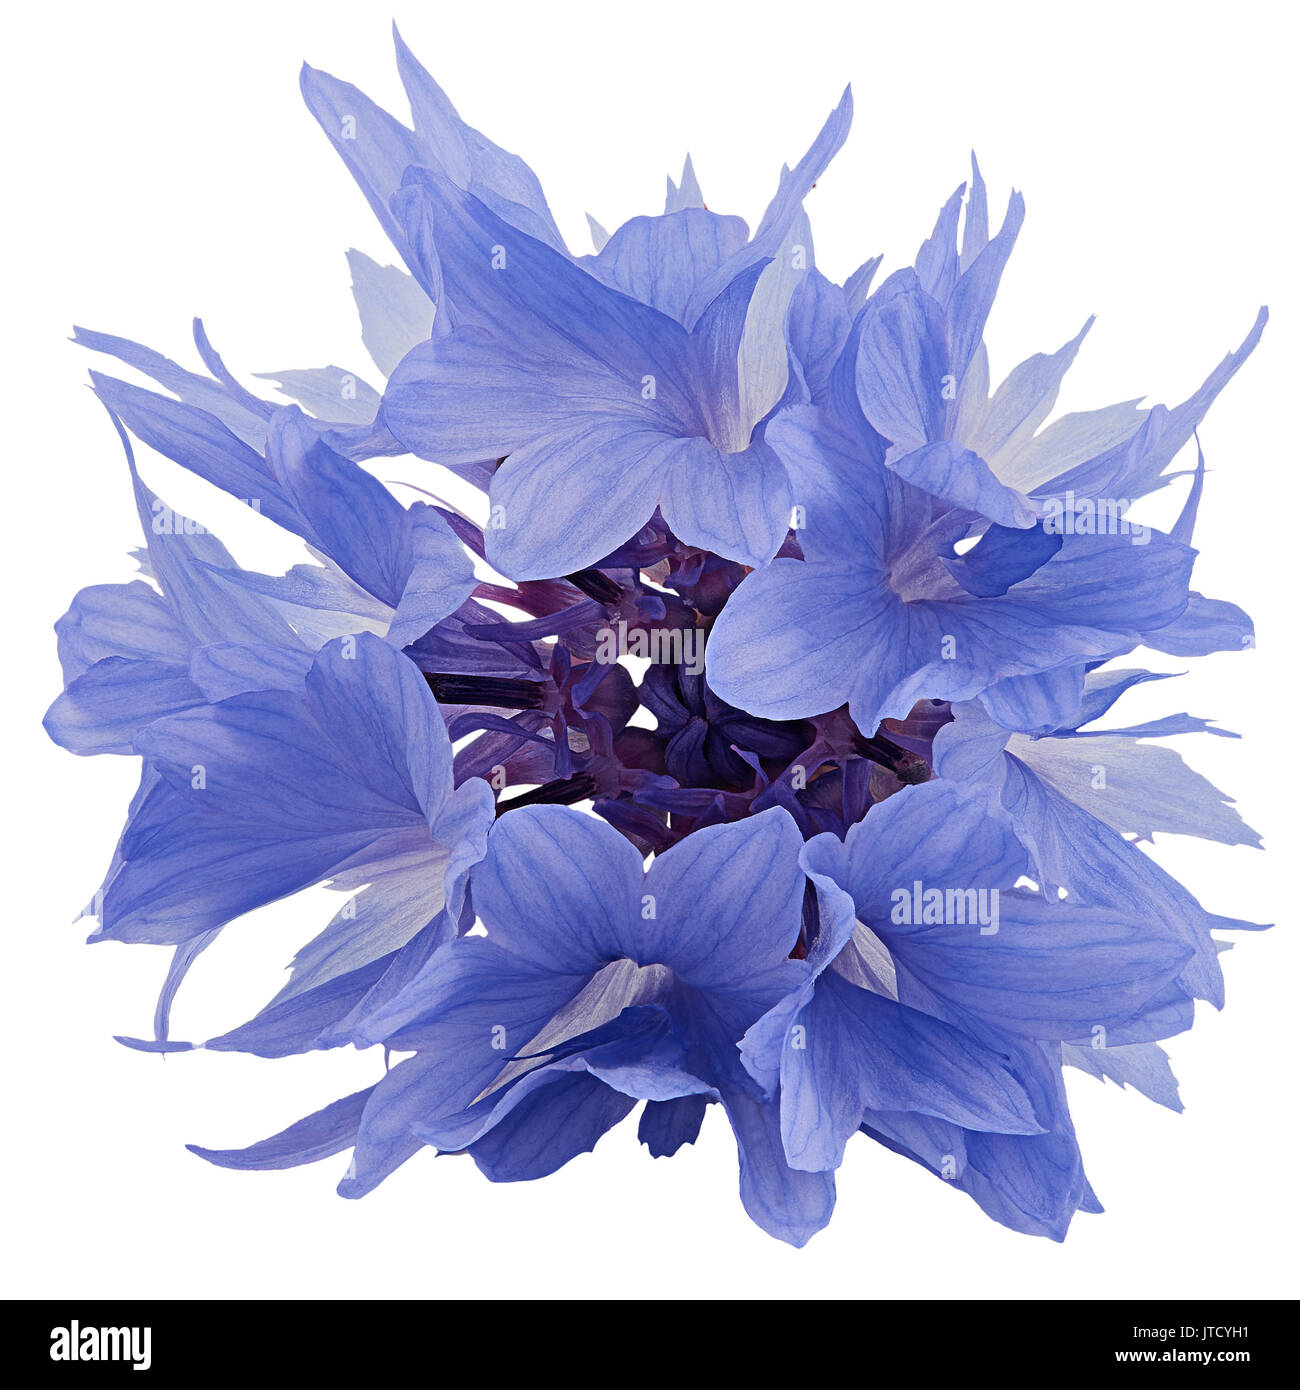 Blue cornflower  isolated on white background Stock Photo